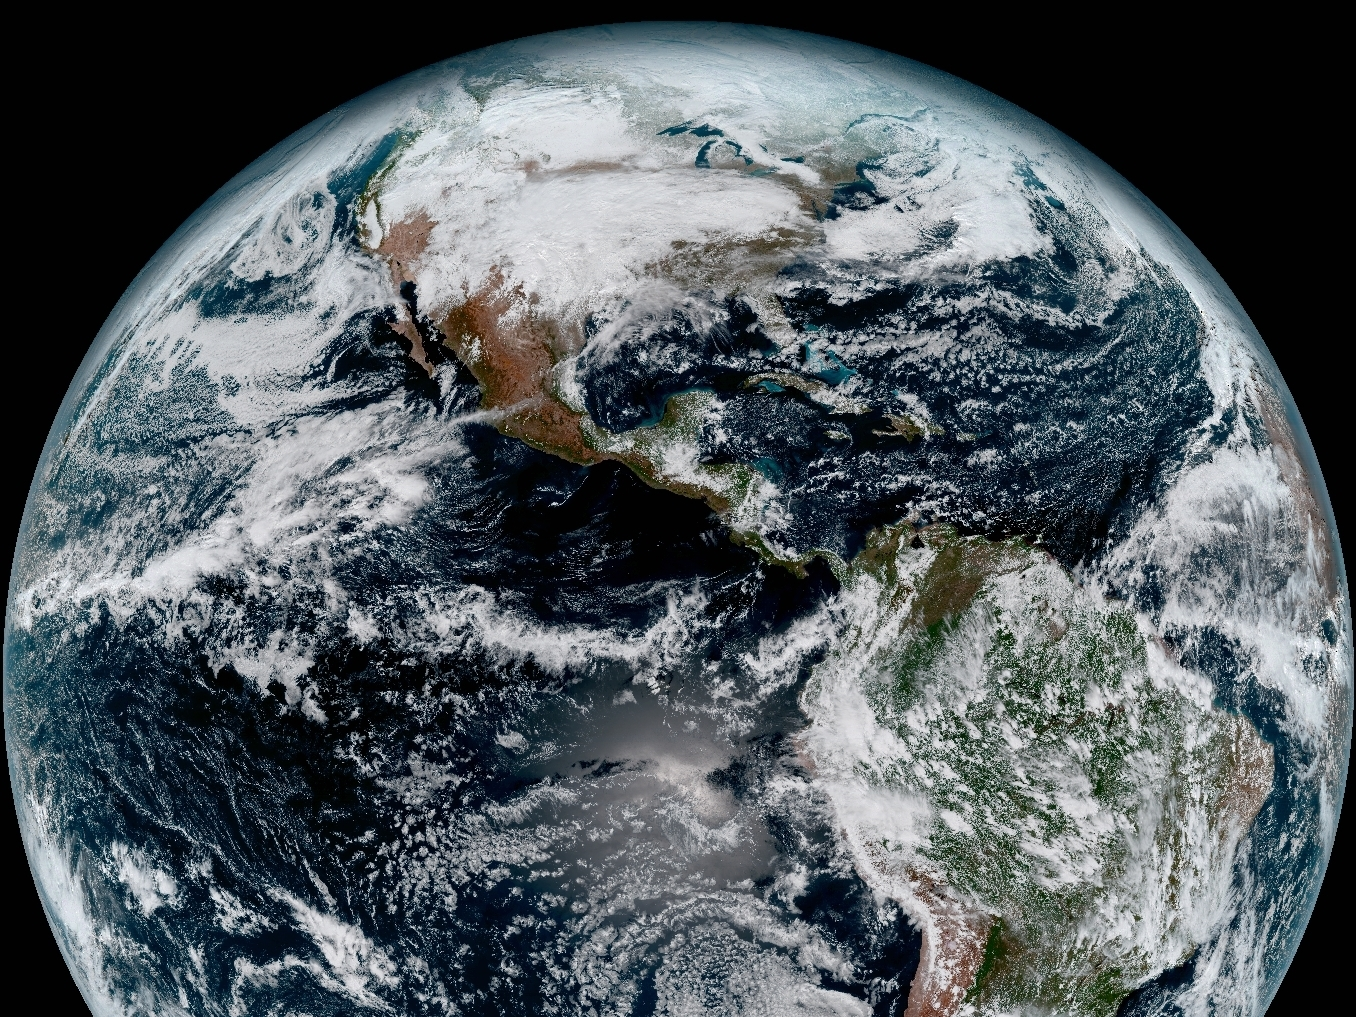 アメリカの気象衛星GOES-16がとらえた地球。2017年1月15日撮影。